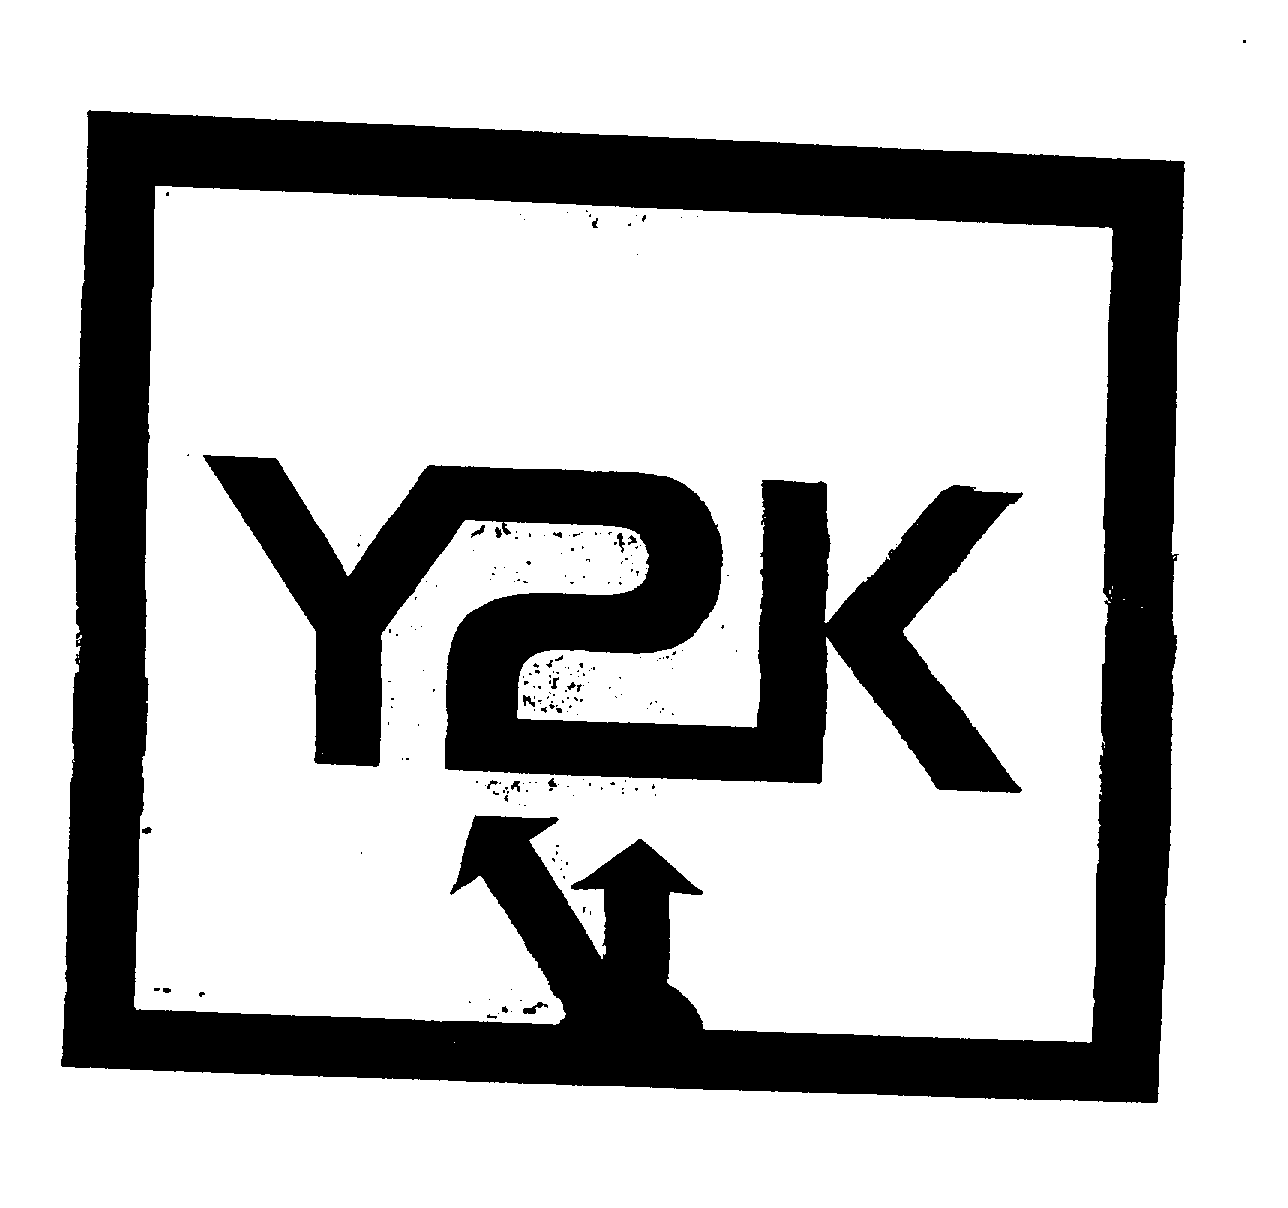 Trademark Logo Y2K